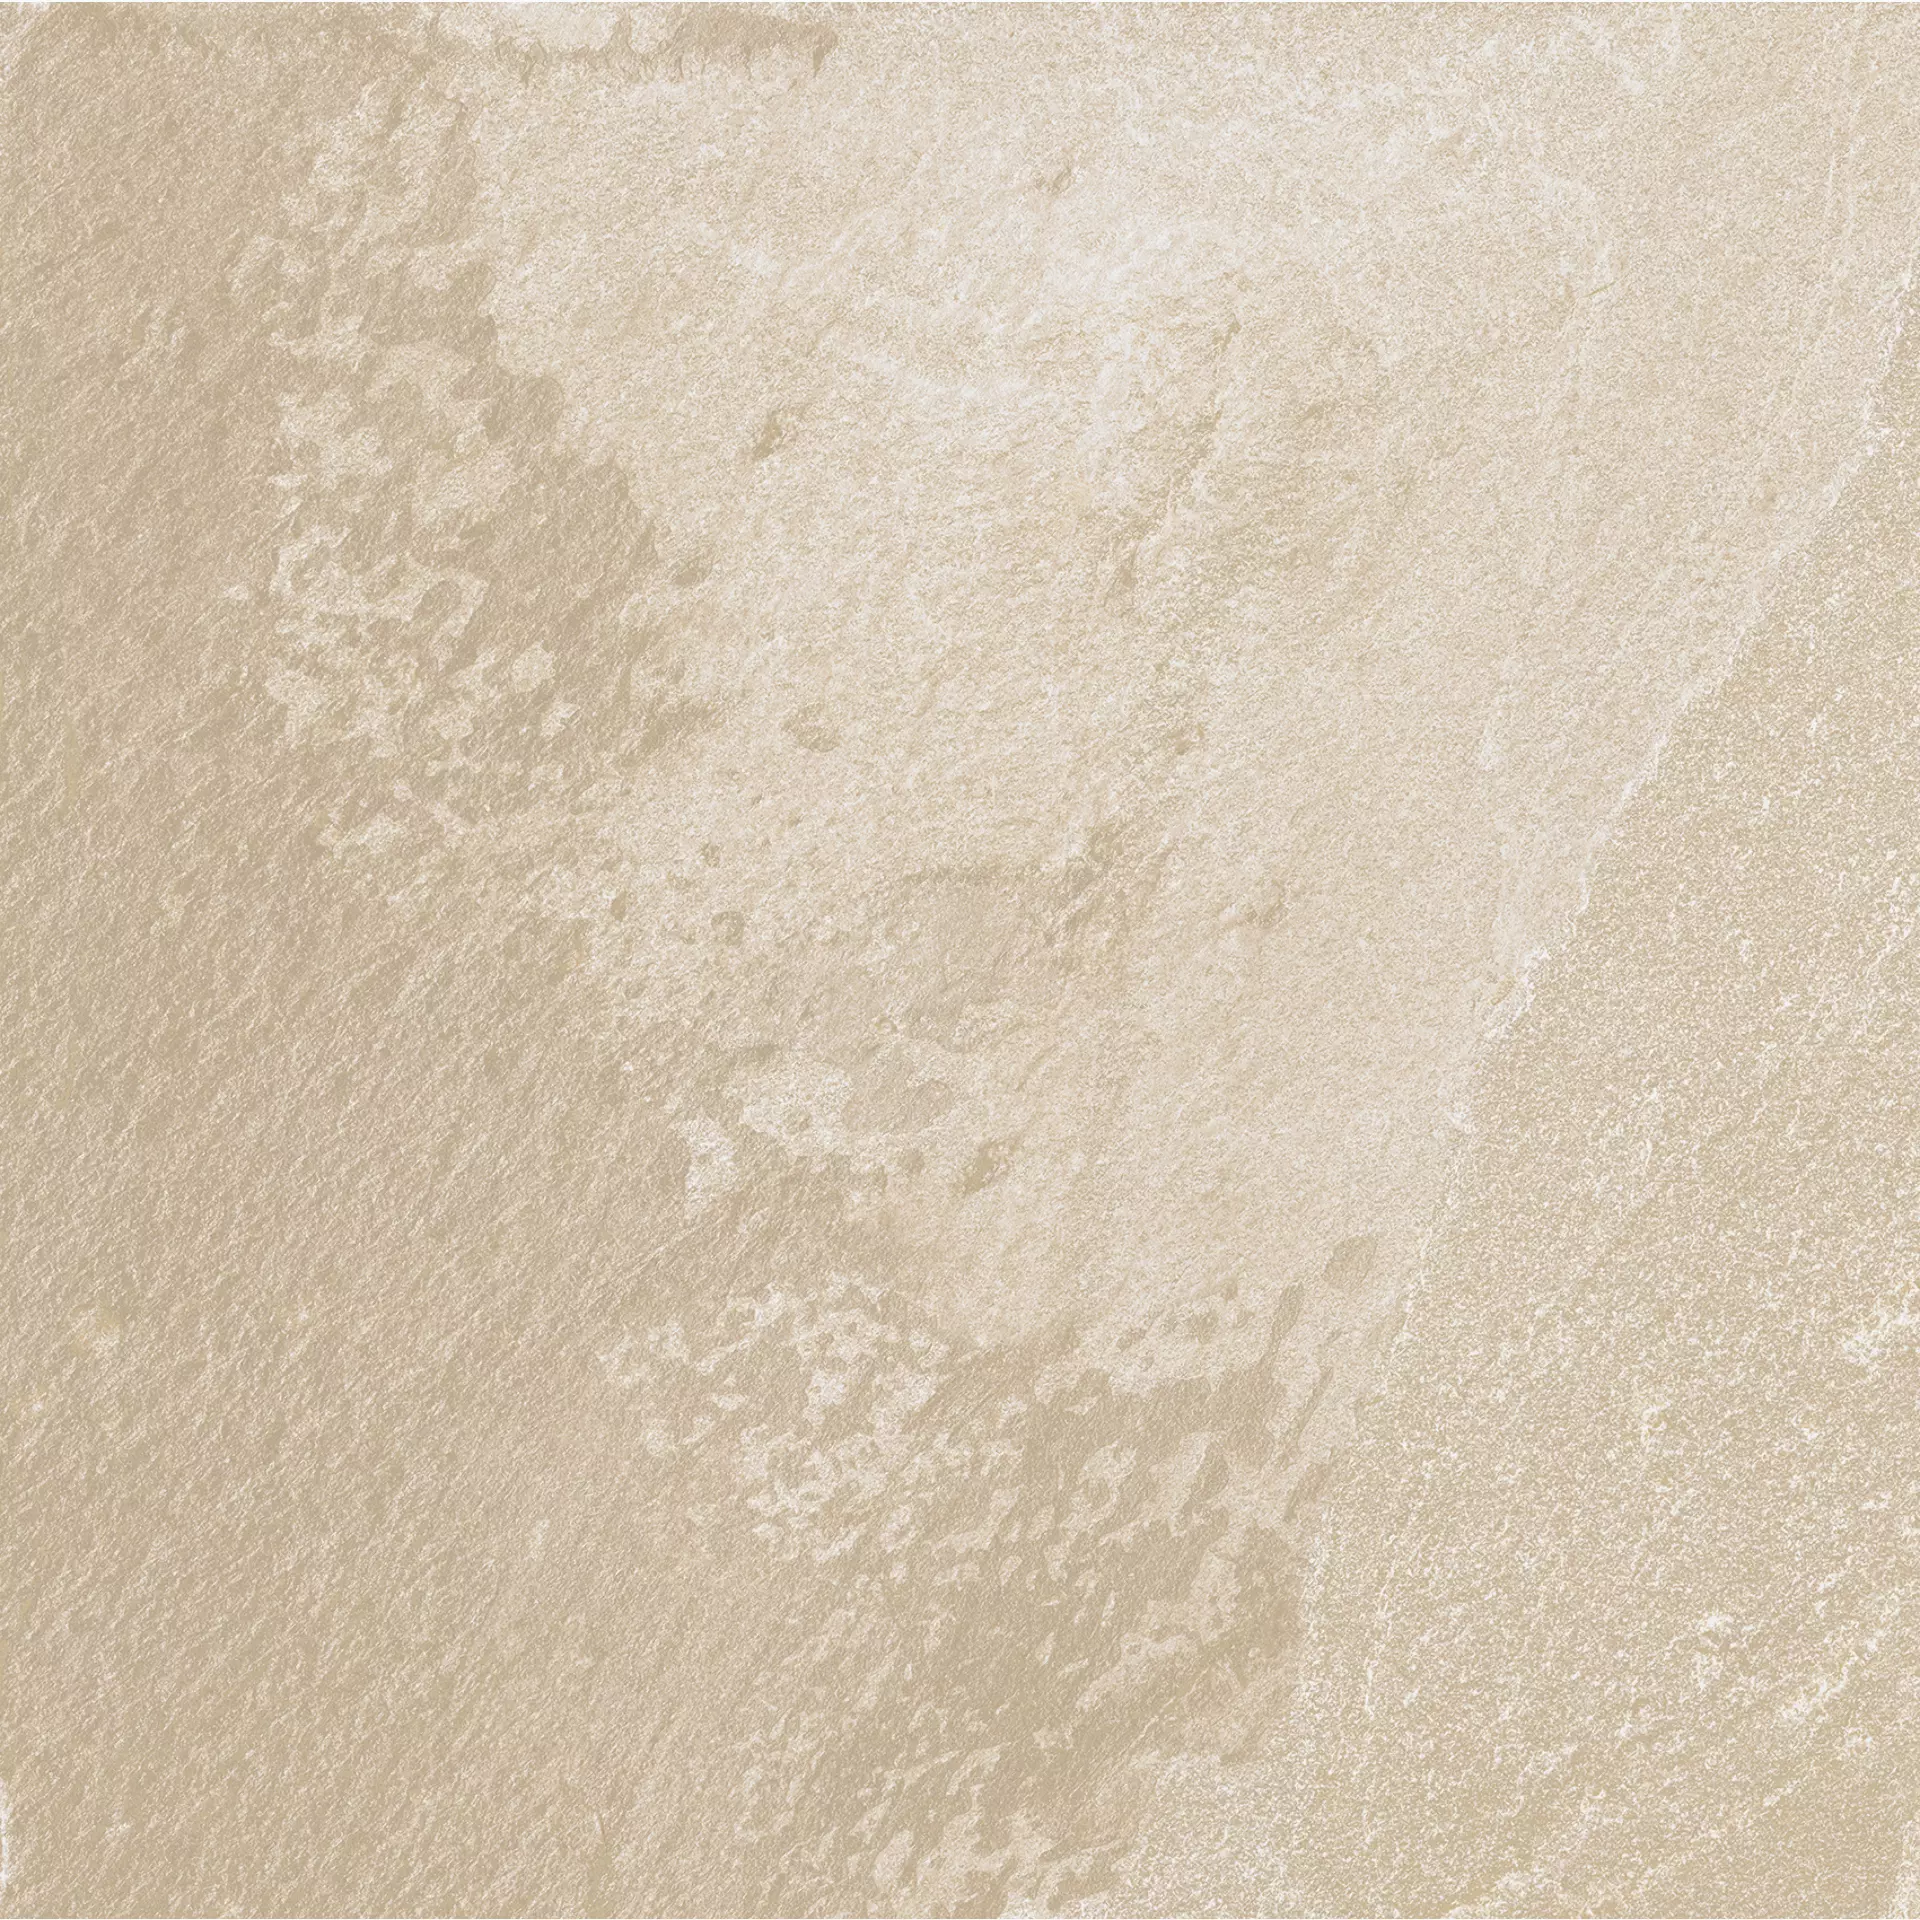 Florim Natural Stone Of Cerim Cream Naturale – Matt Cream 753003 matt natur 60x60cm rektifiziert 9mm